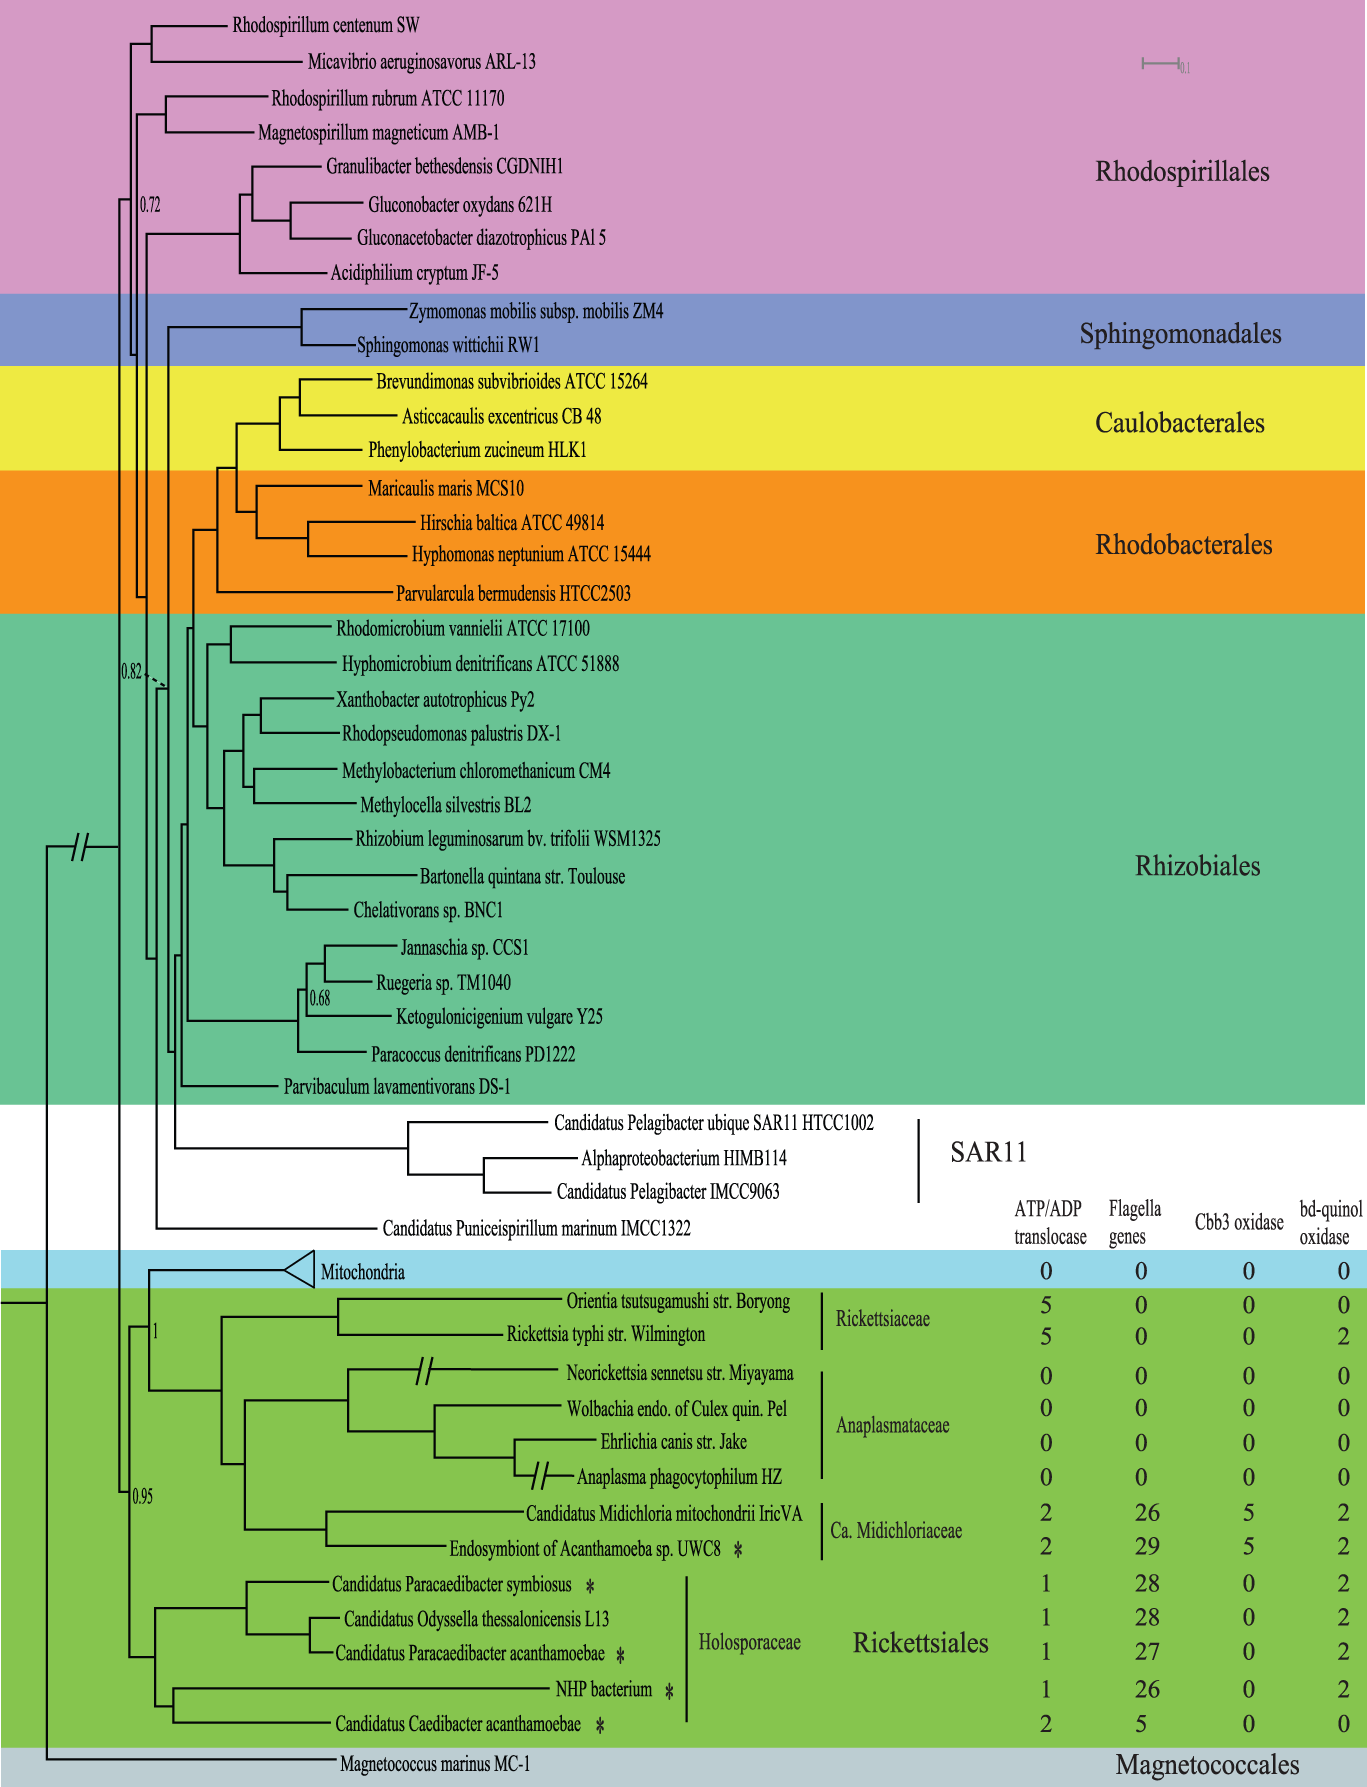 Байесовское консенсусное дерево было основано на конкатенированных белковых последовательностях 55 митохондриальных и ядерных генов.